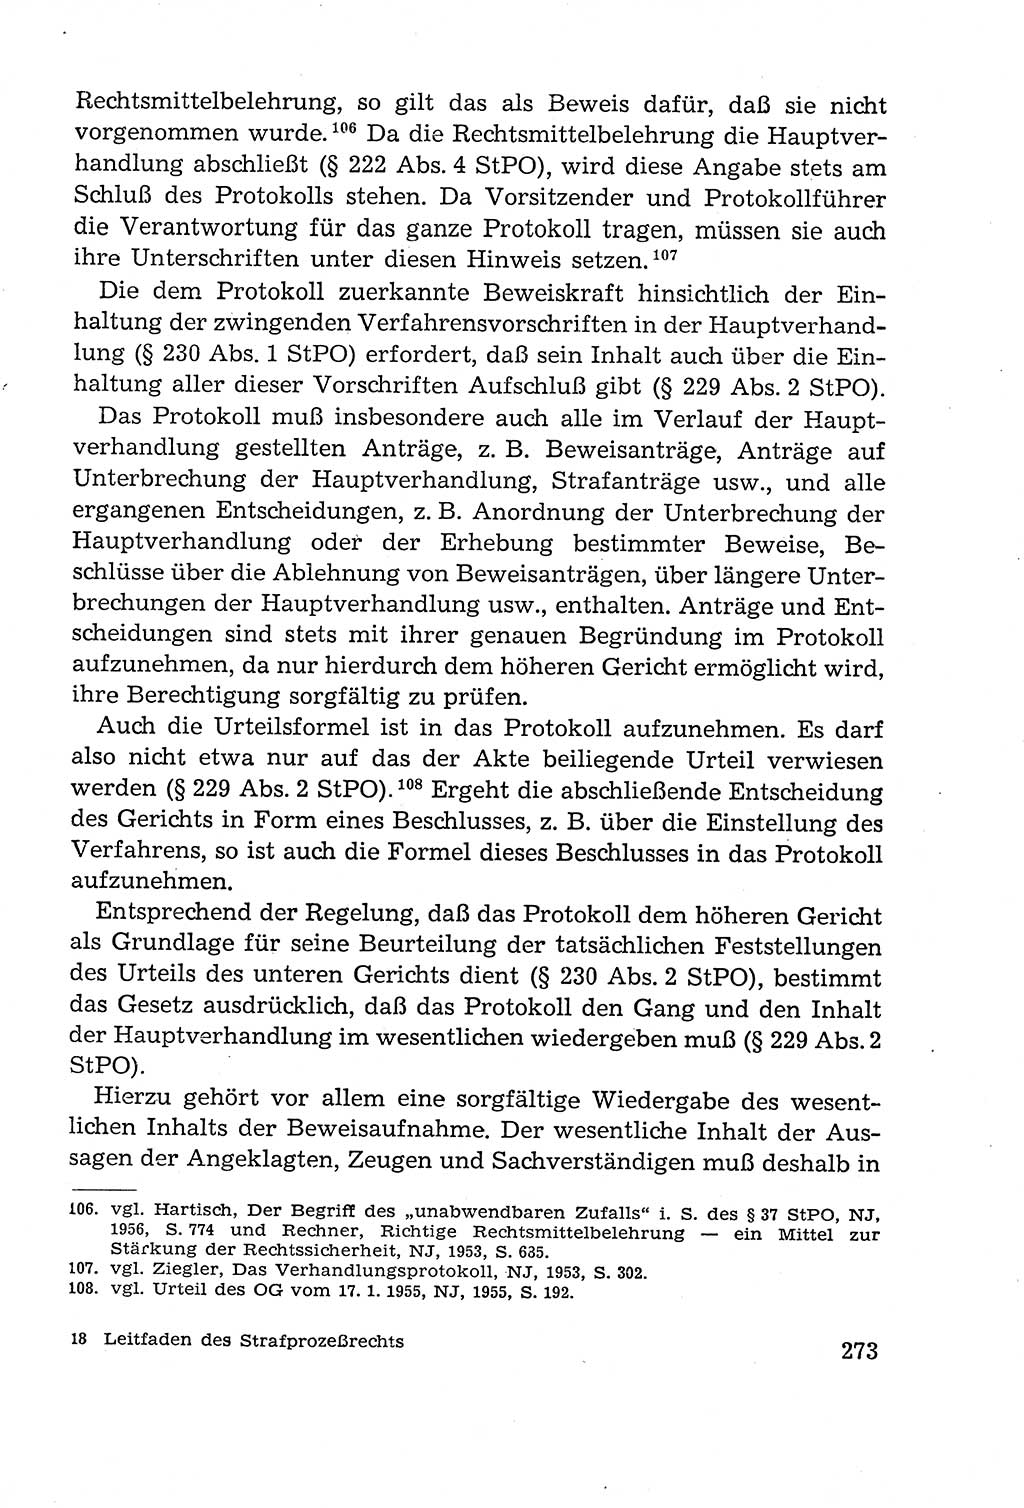 Leitfaden des Strafprozeßrechts der Deutschen Demokratischen Republik (DDR) 1959, Seite 273 (LF StPR DDR 1959, S. 273)